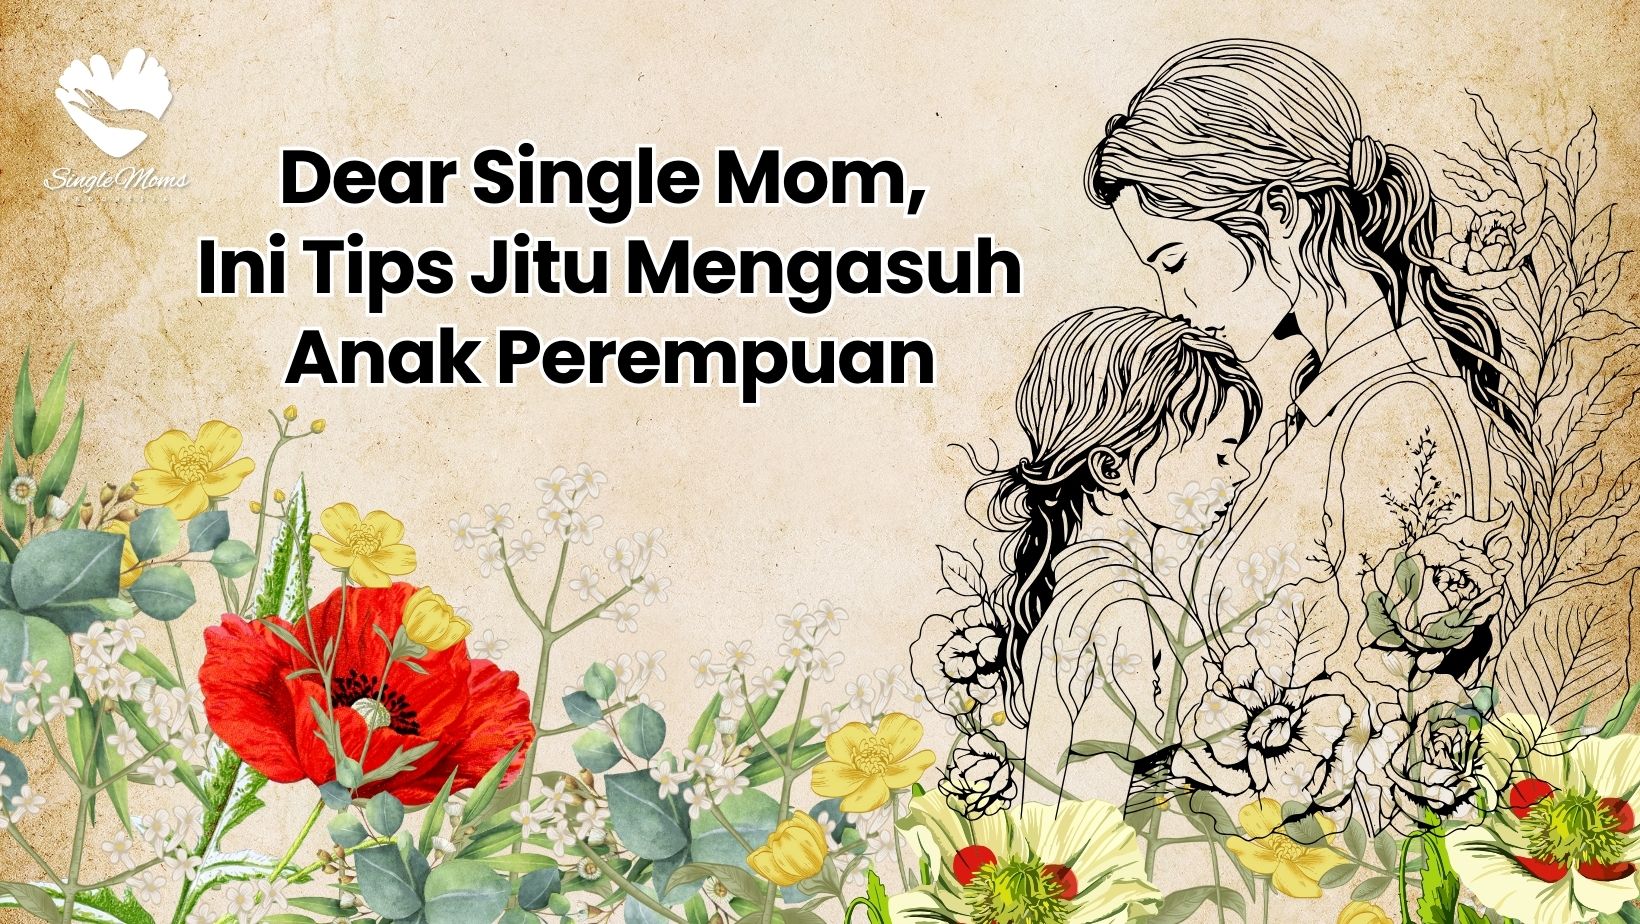 Dear Single Mom, Ini Tips Jitu Mengasuh Anak Perempuan